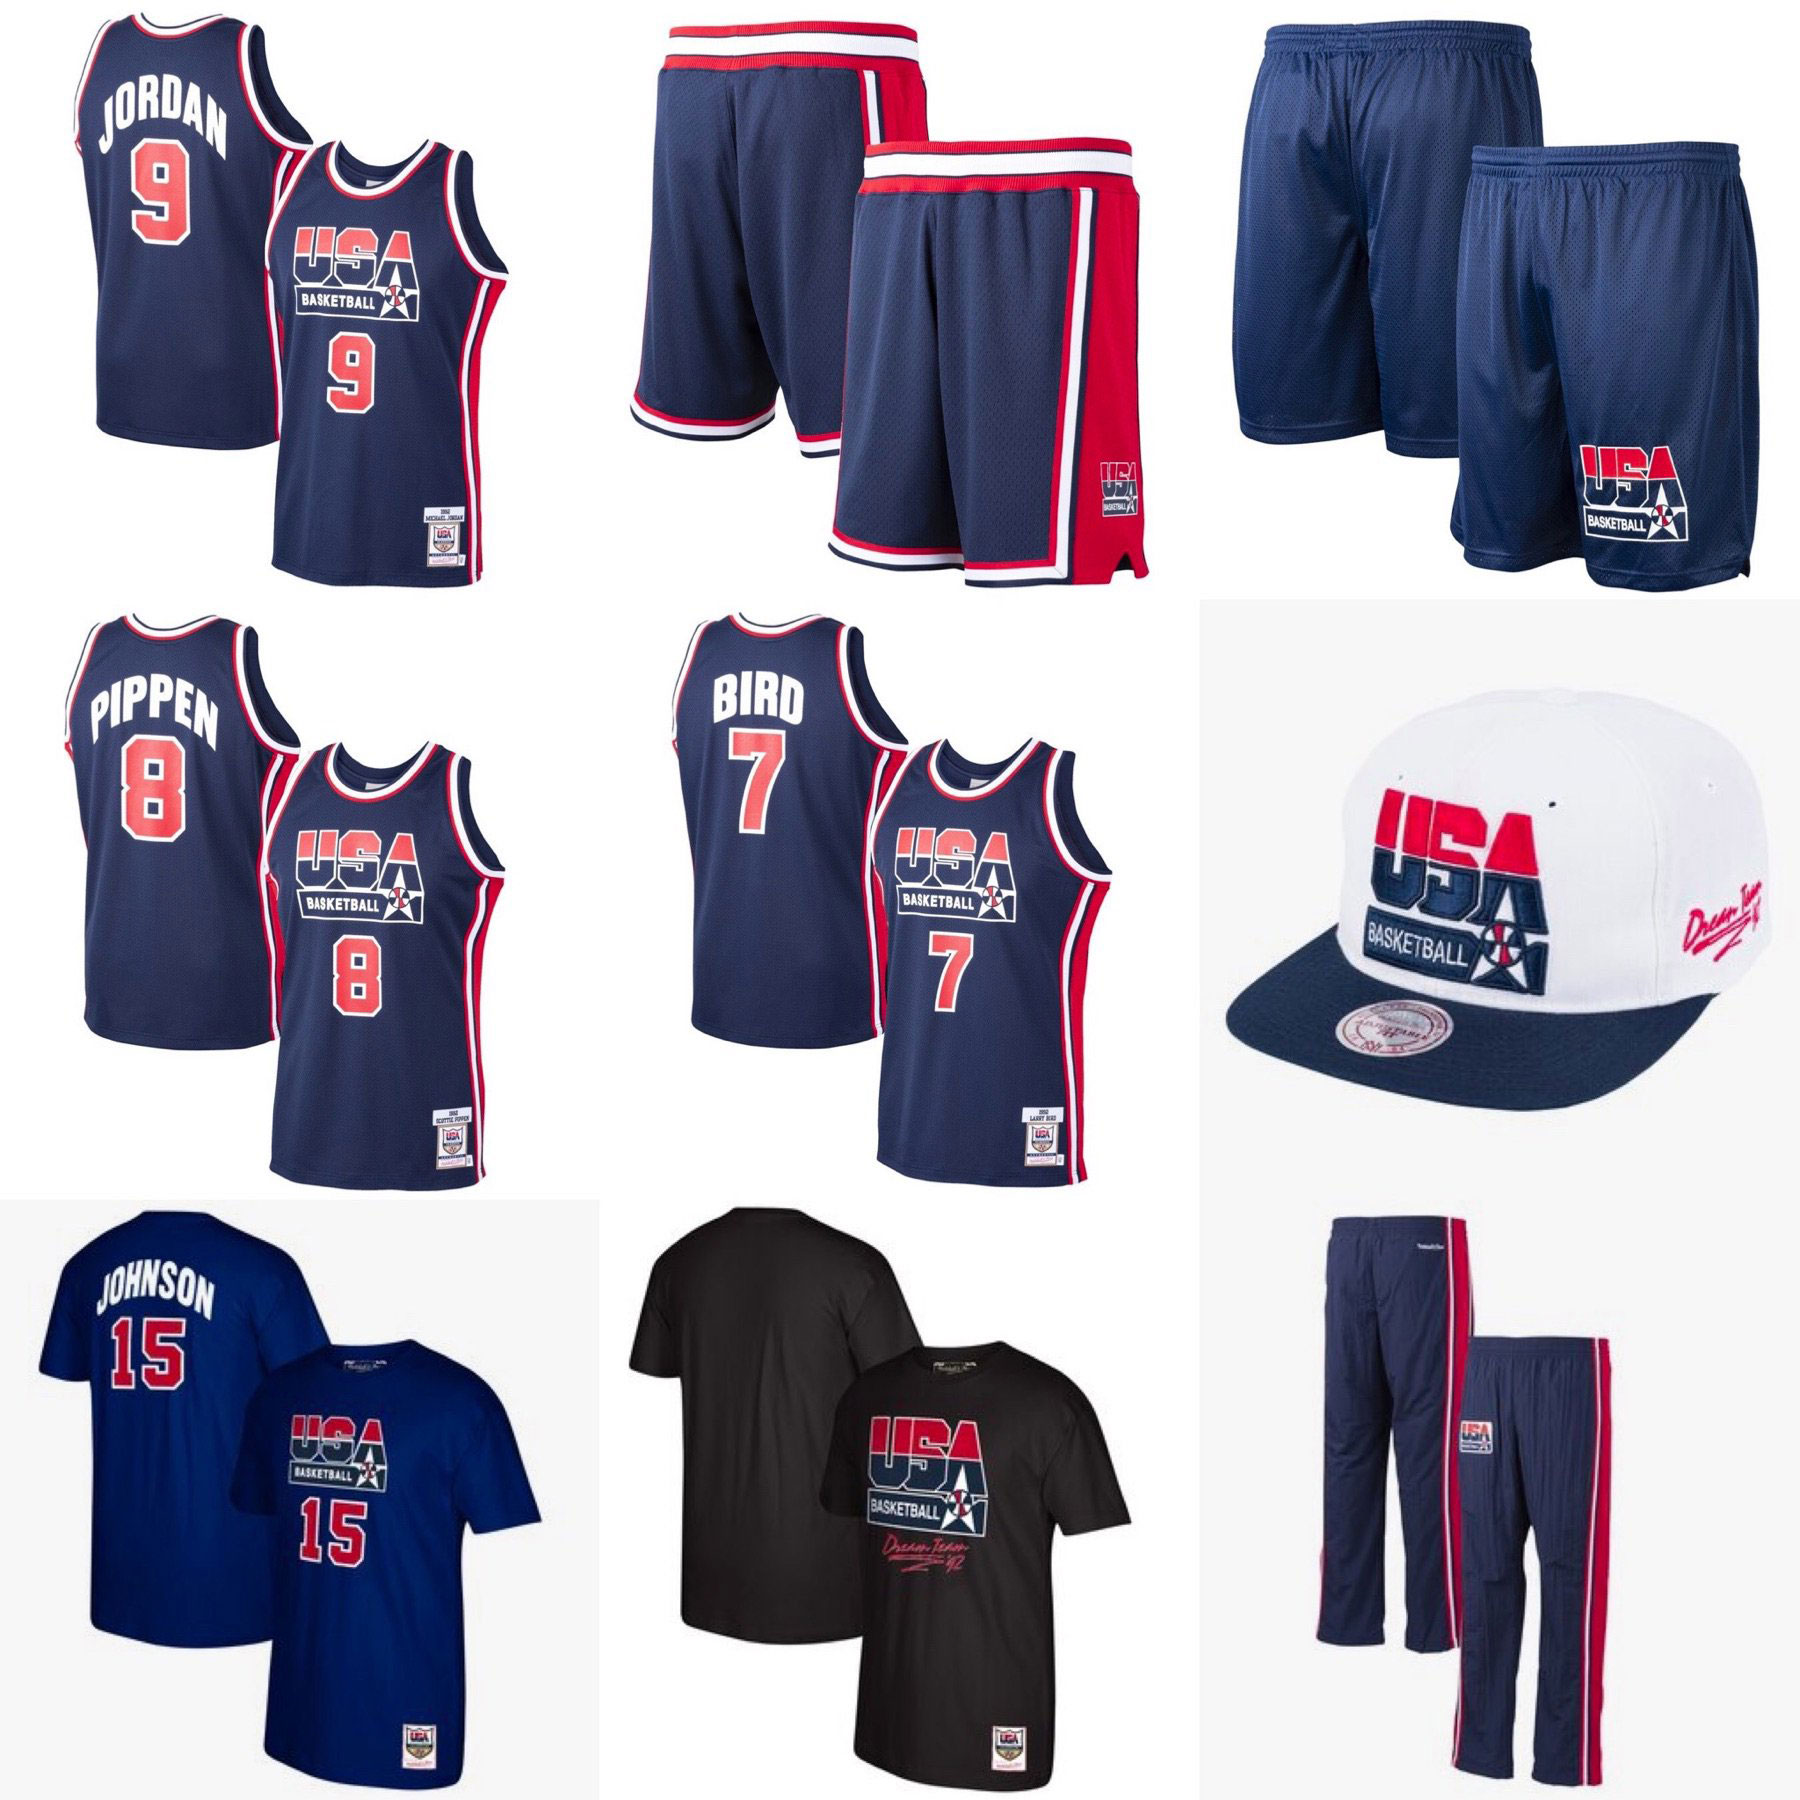 1992-nba-dream-team-basketball-gear